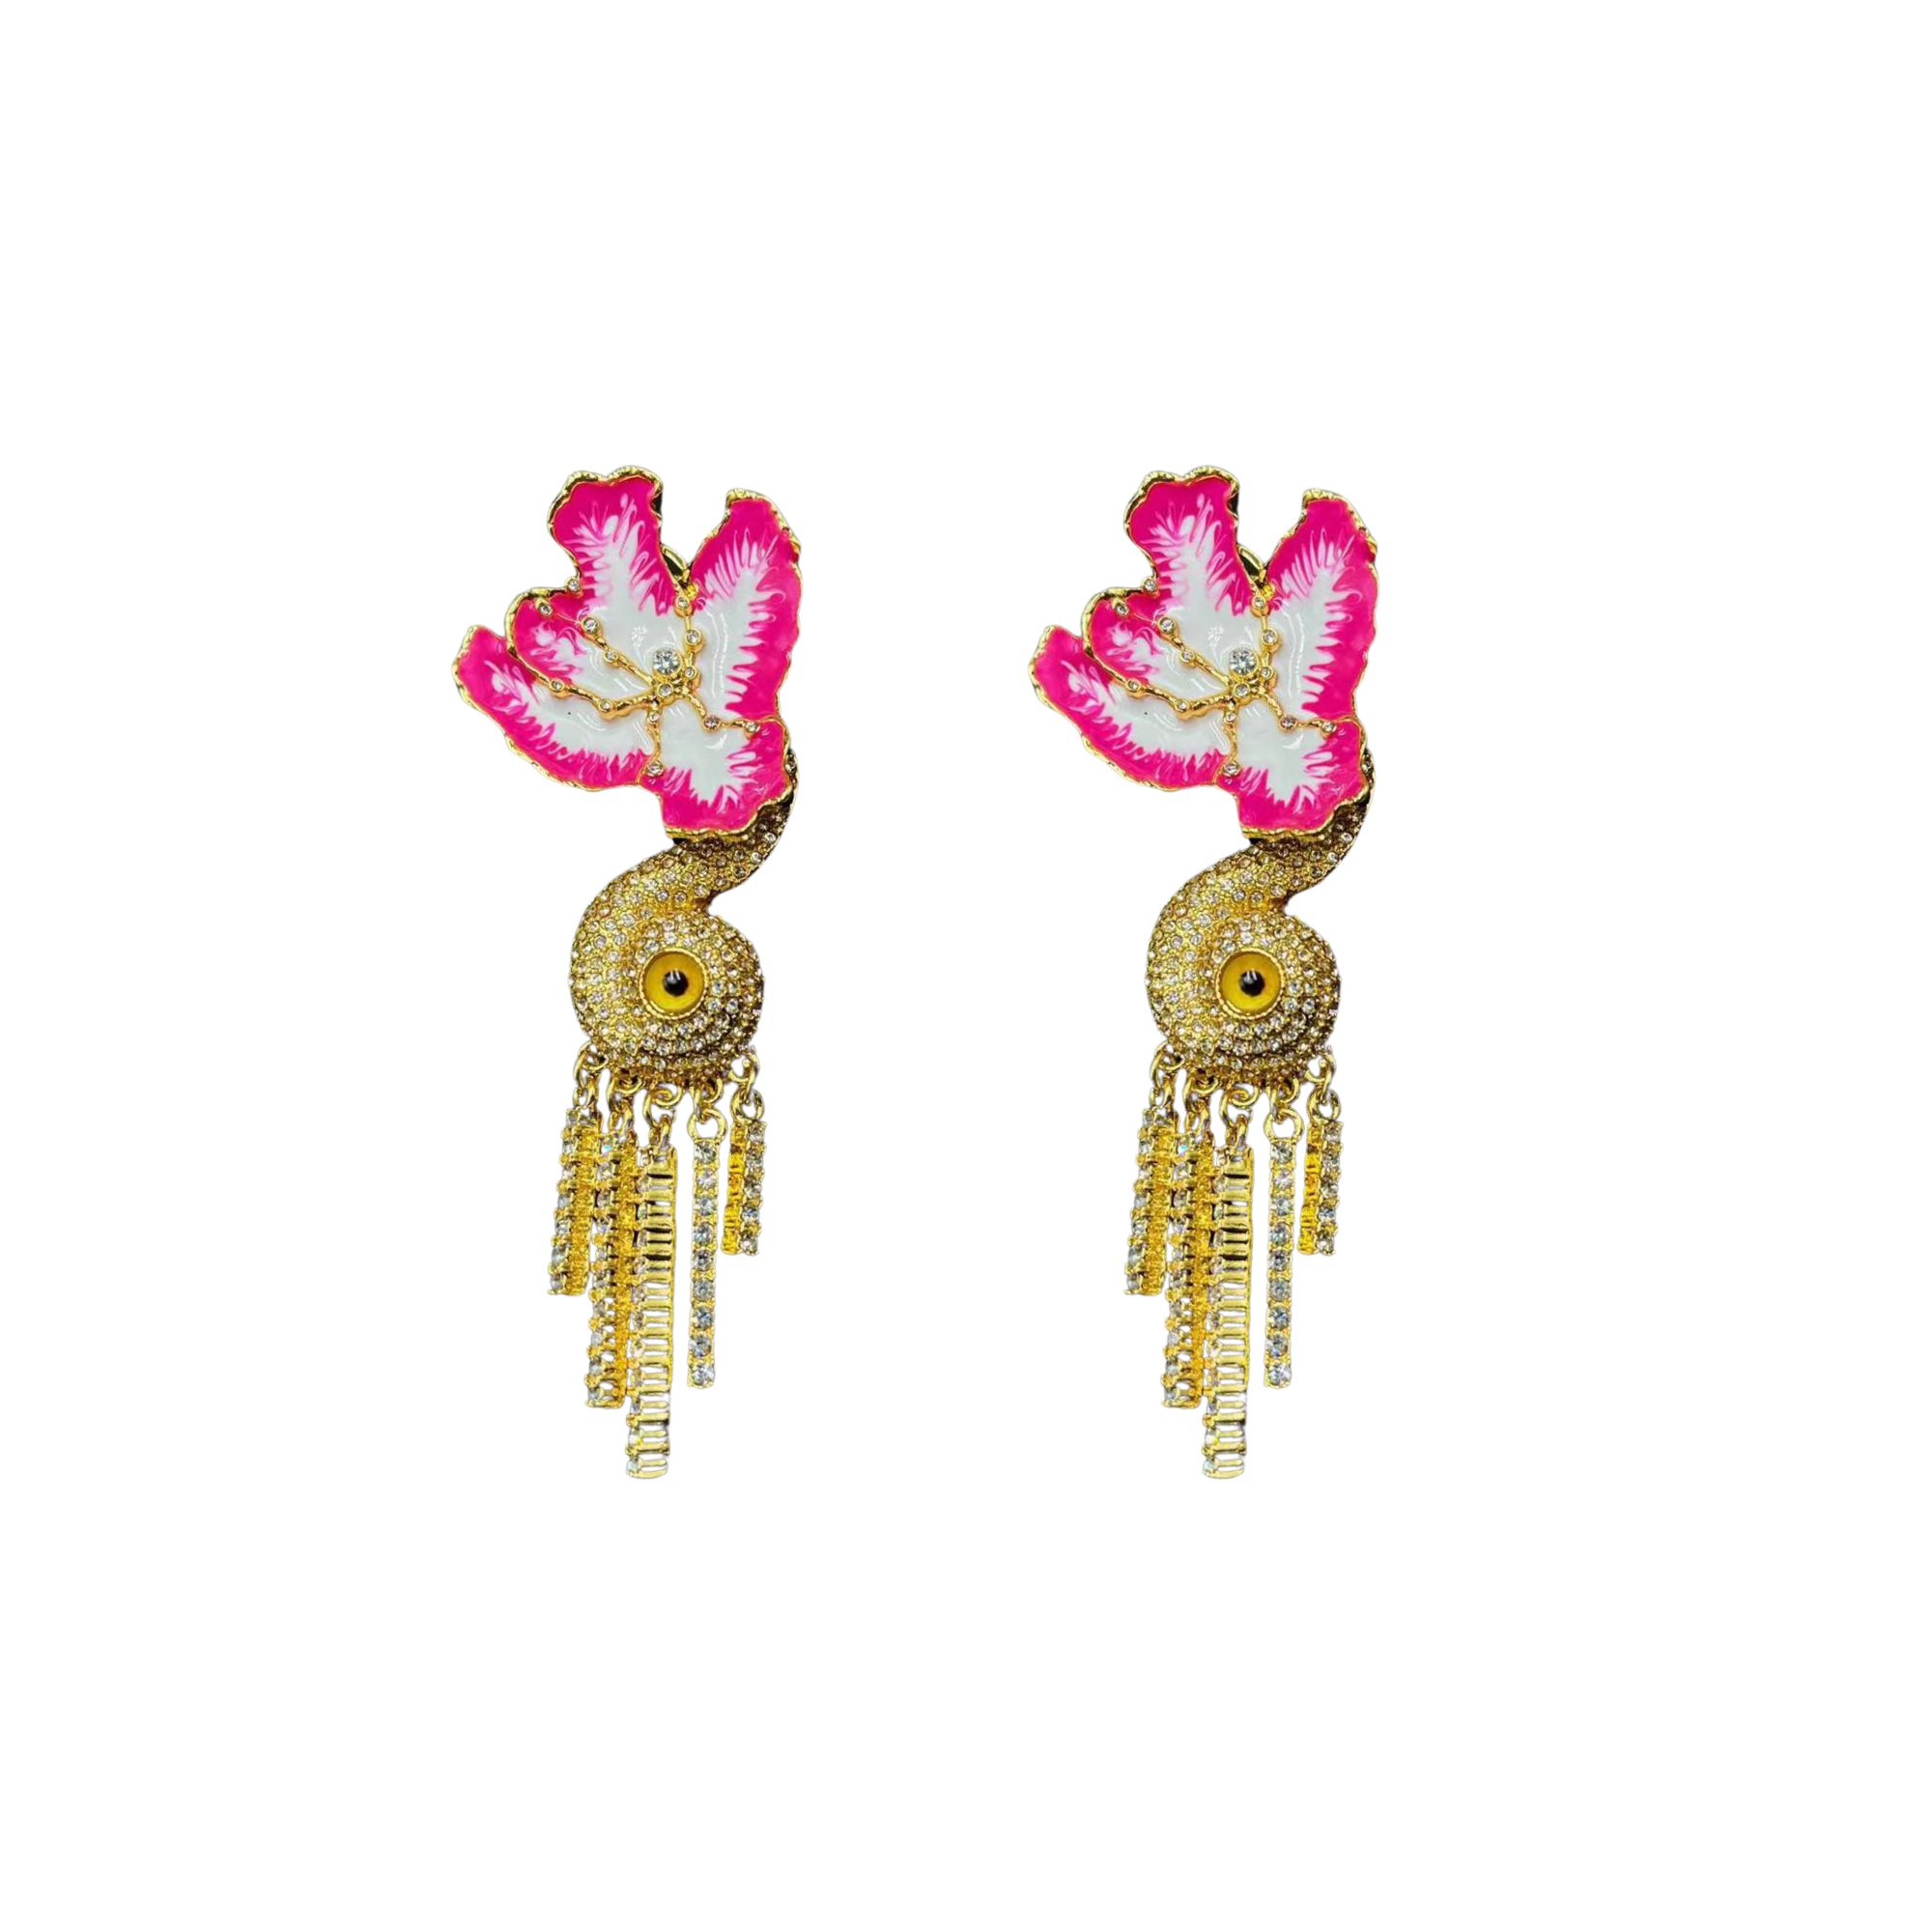 Pink Pansies Curtain Earrings - Pre Order: Ships Feb 29